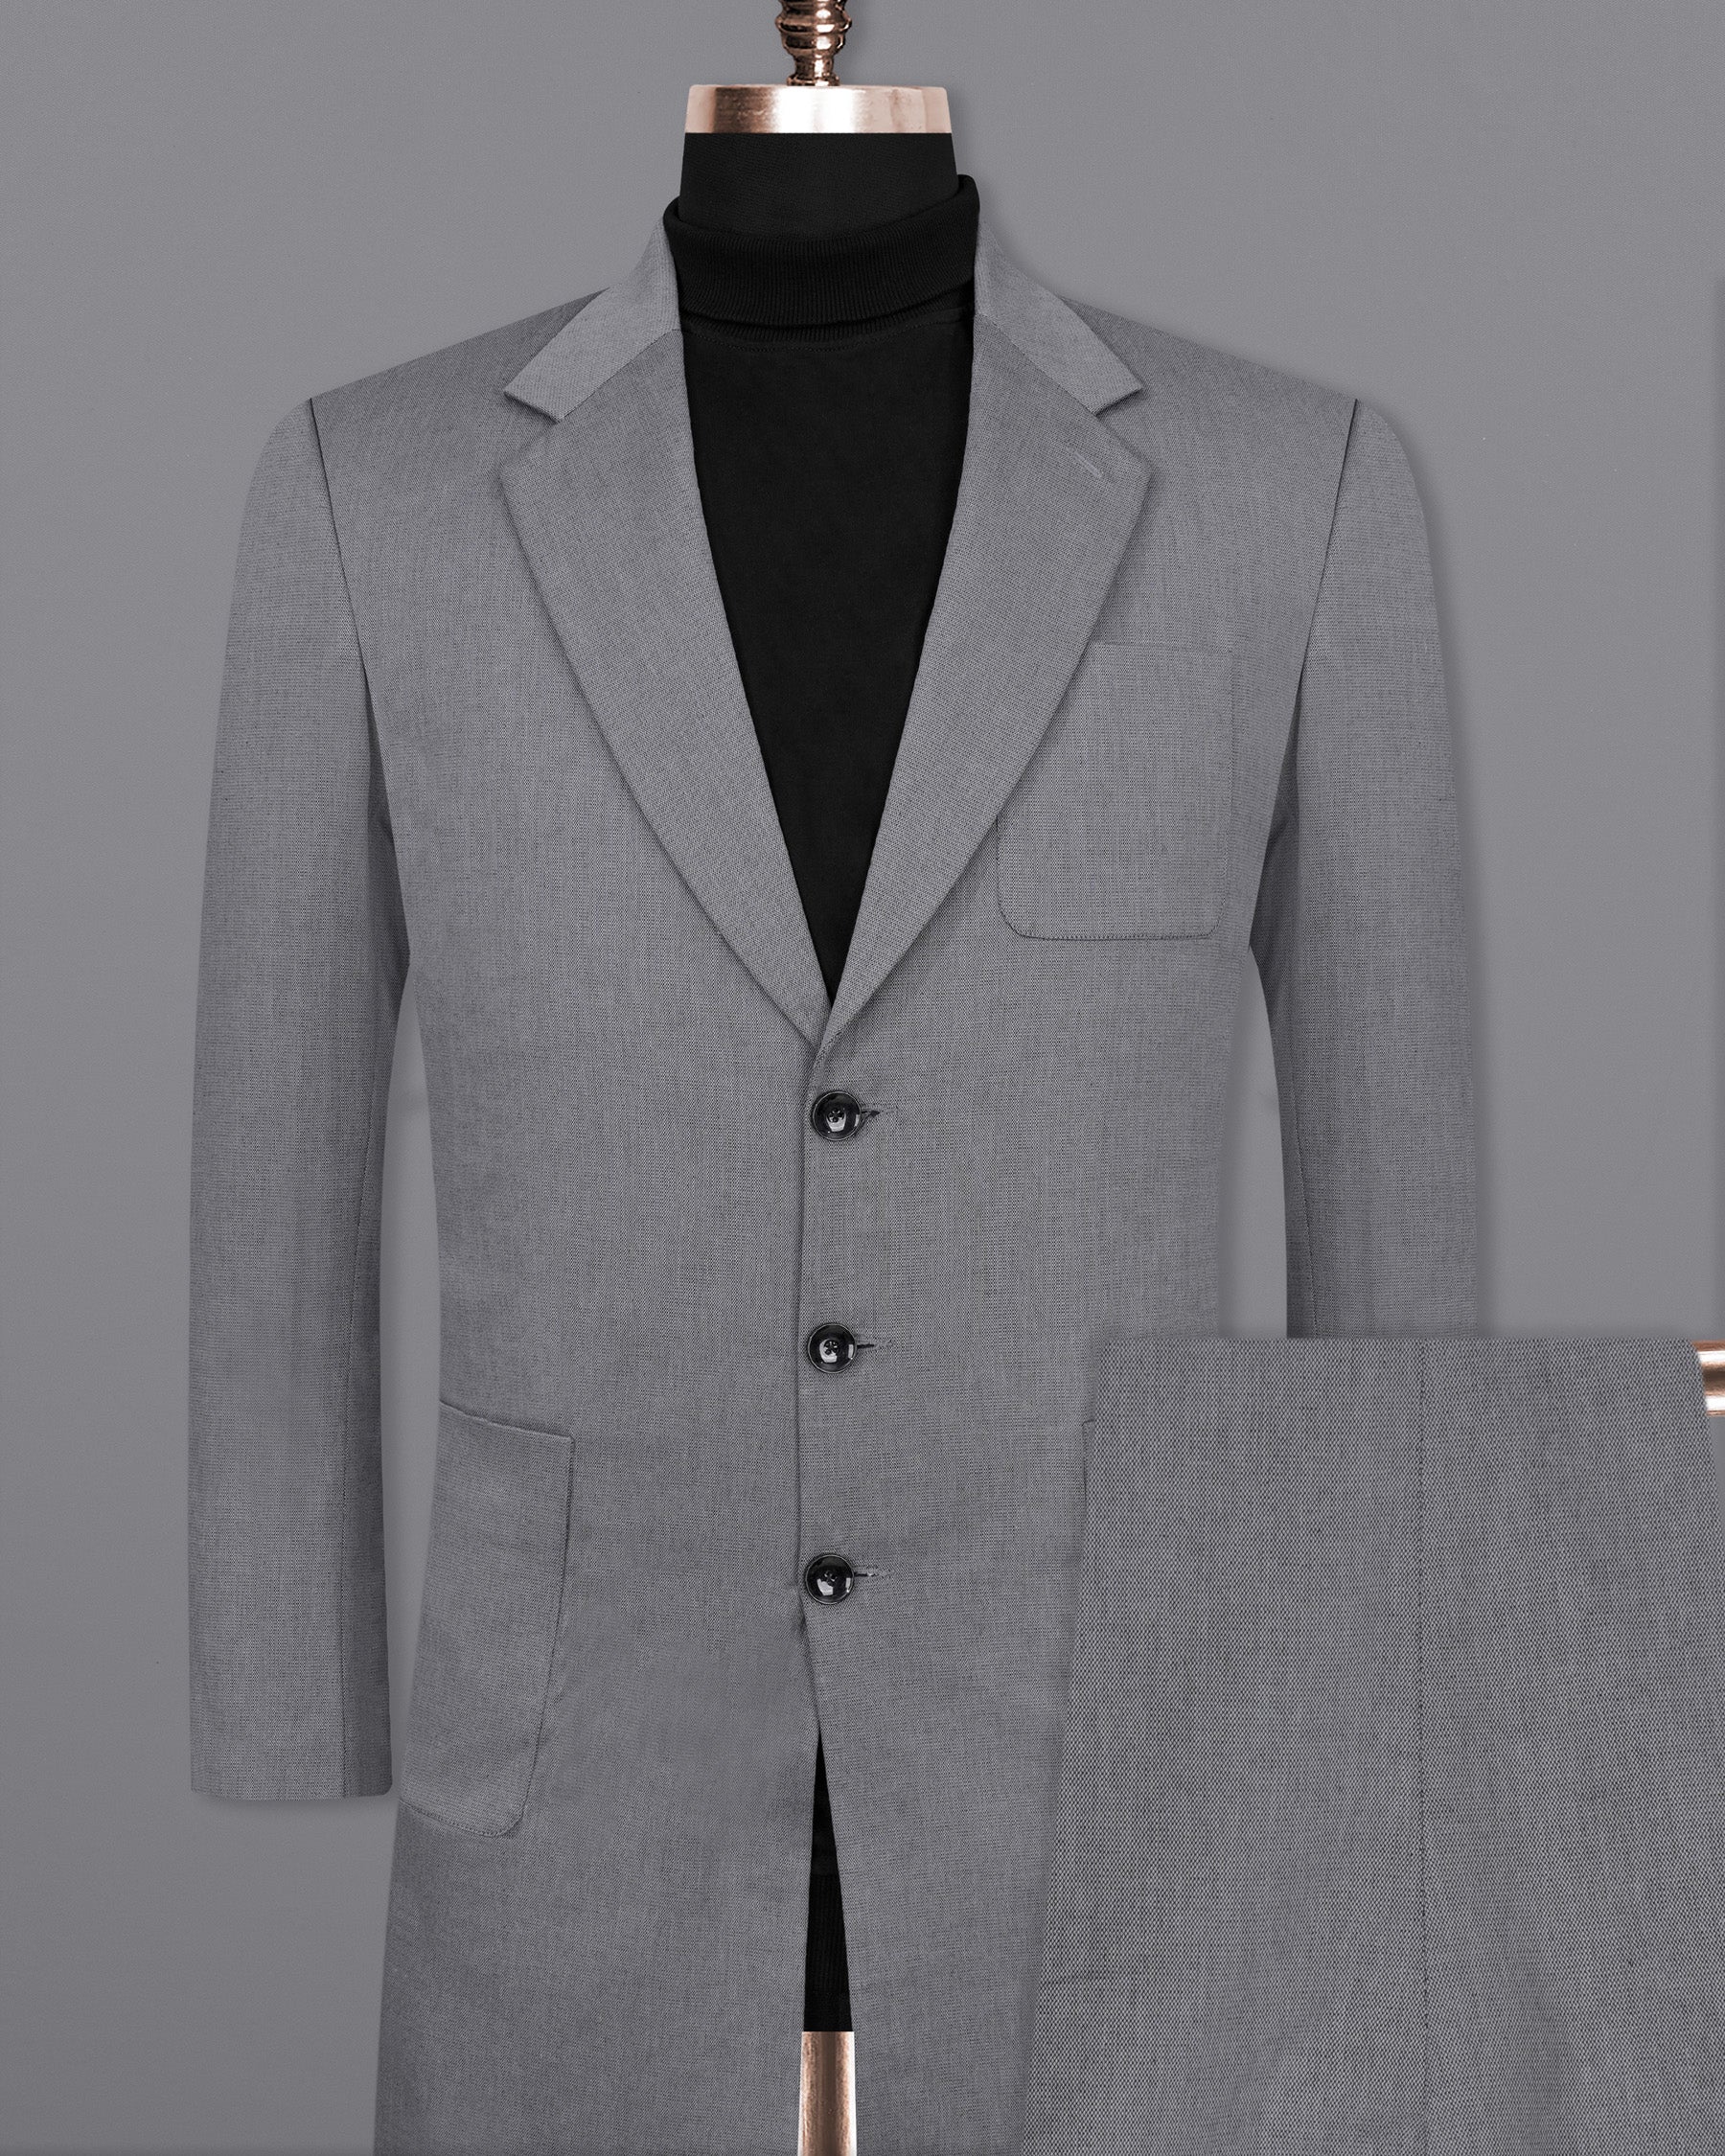 MRULIC coat for men Pants Slim Party Jacket 3-Piece Men's & Vest R Business  Wedding Suit Suit Men's Coats & Jackets Men Fleece Jackets & Coats Grey + S  - Walmart.com